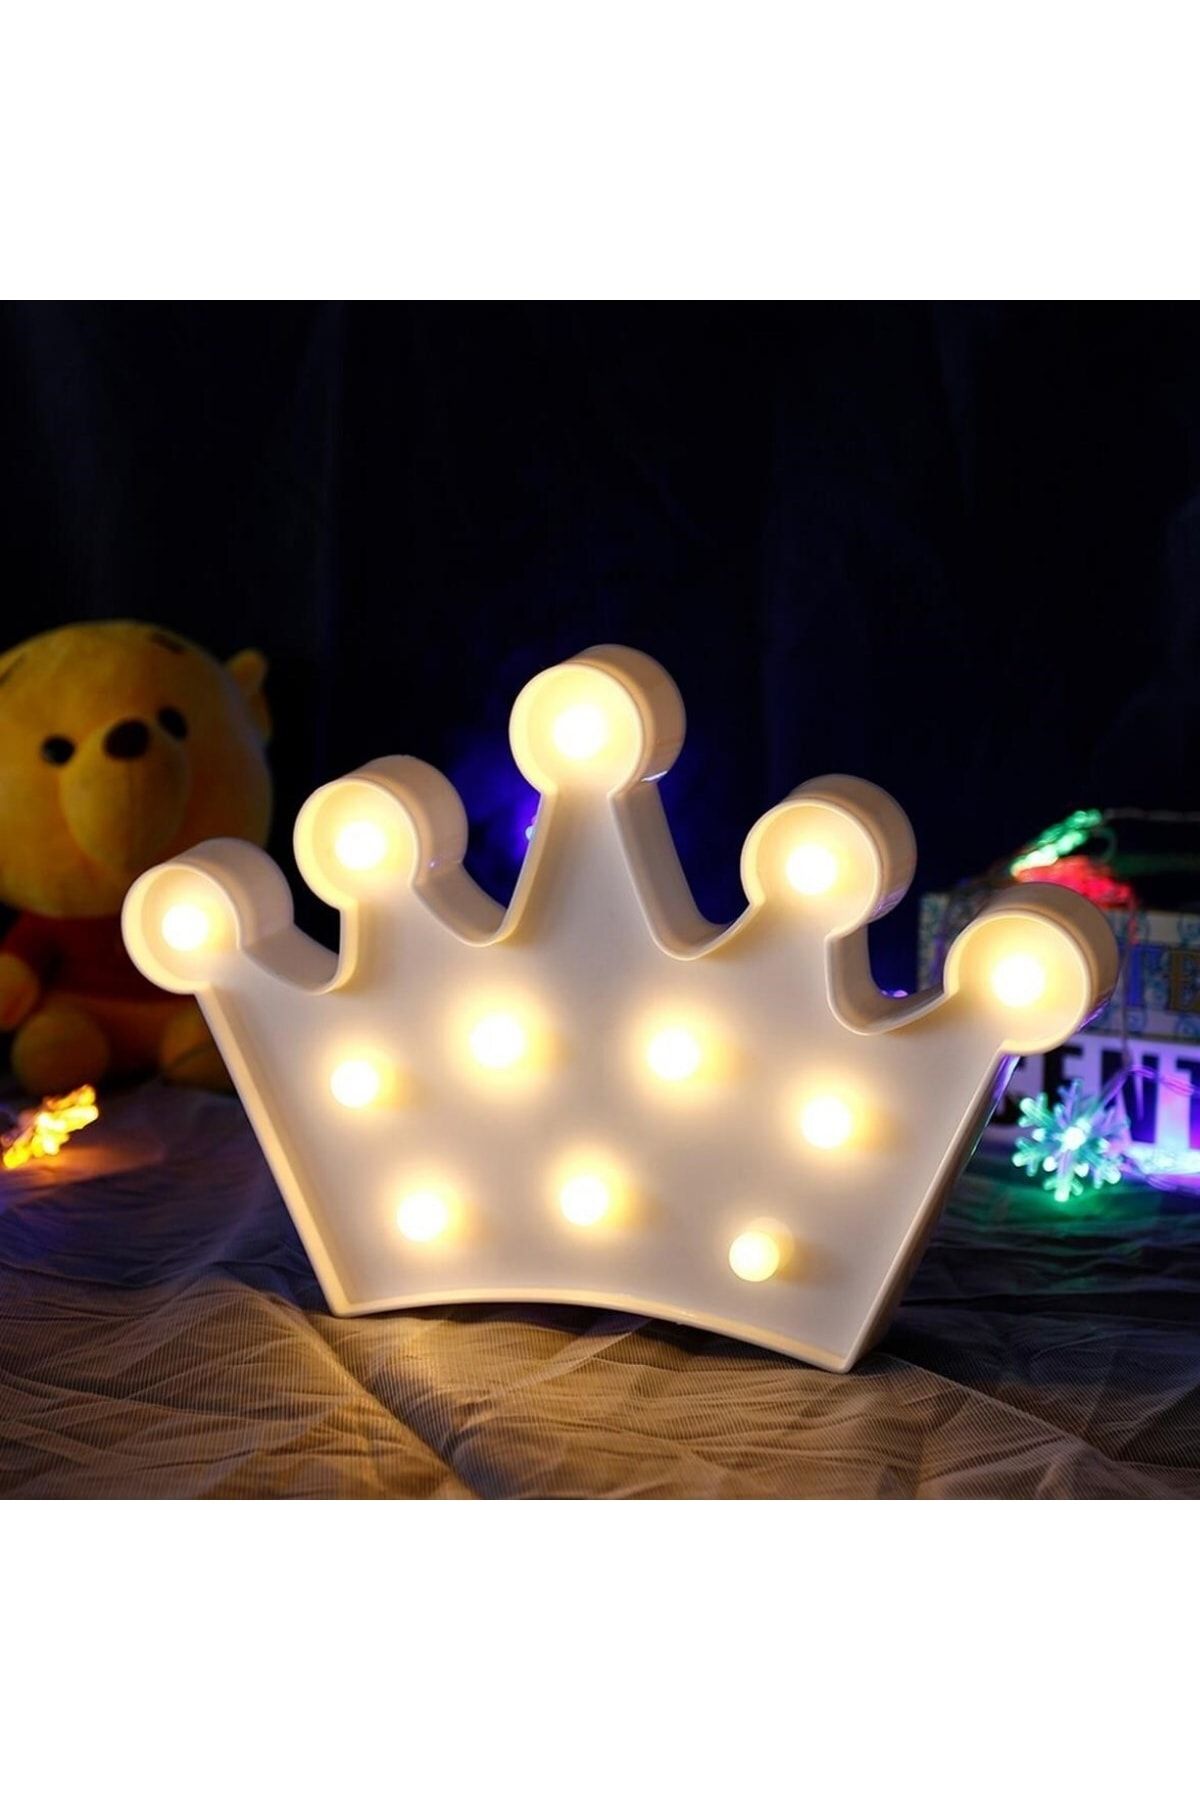 TEKNO İSTANBUL 3d Dekoratif Pilli Kraliçe  Model Led Masa Ve Gece Lambası